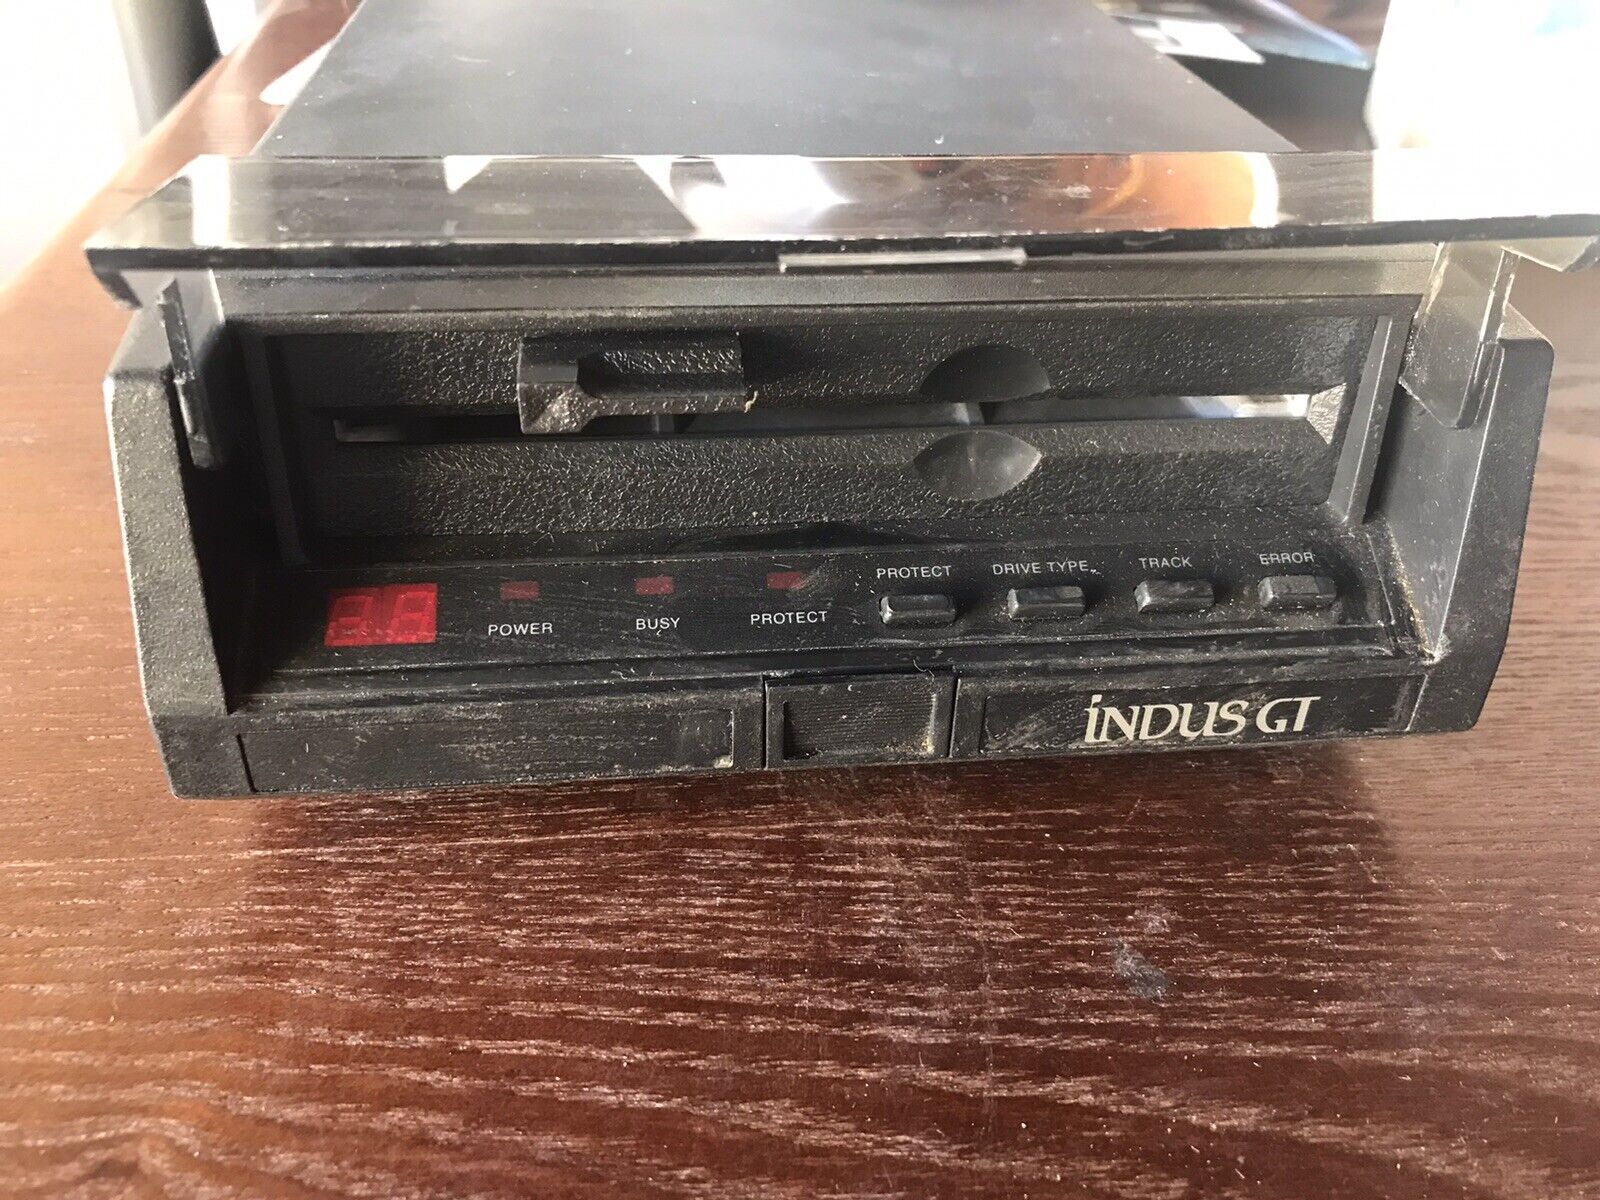 Atari Indus GT Disk Drive